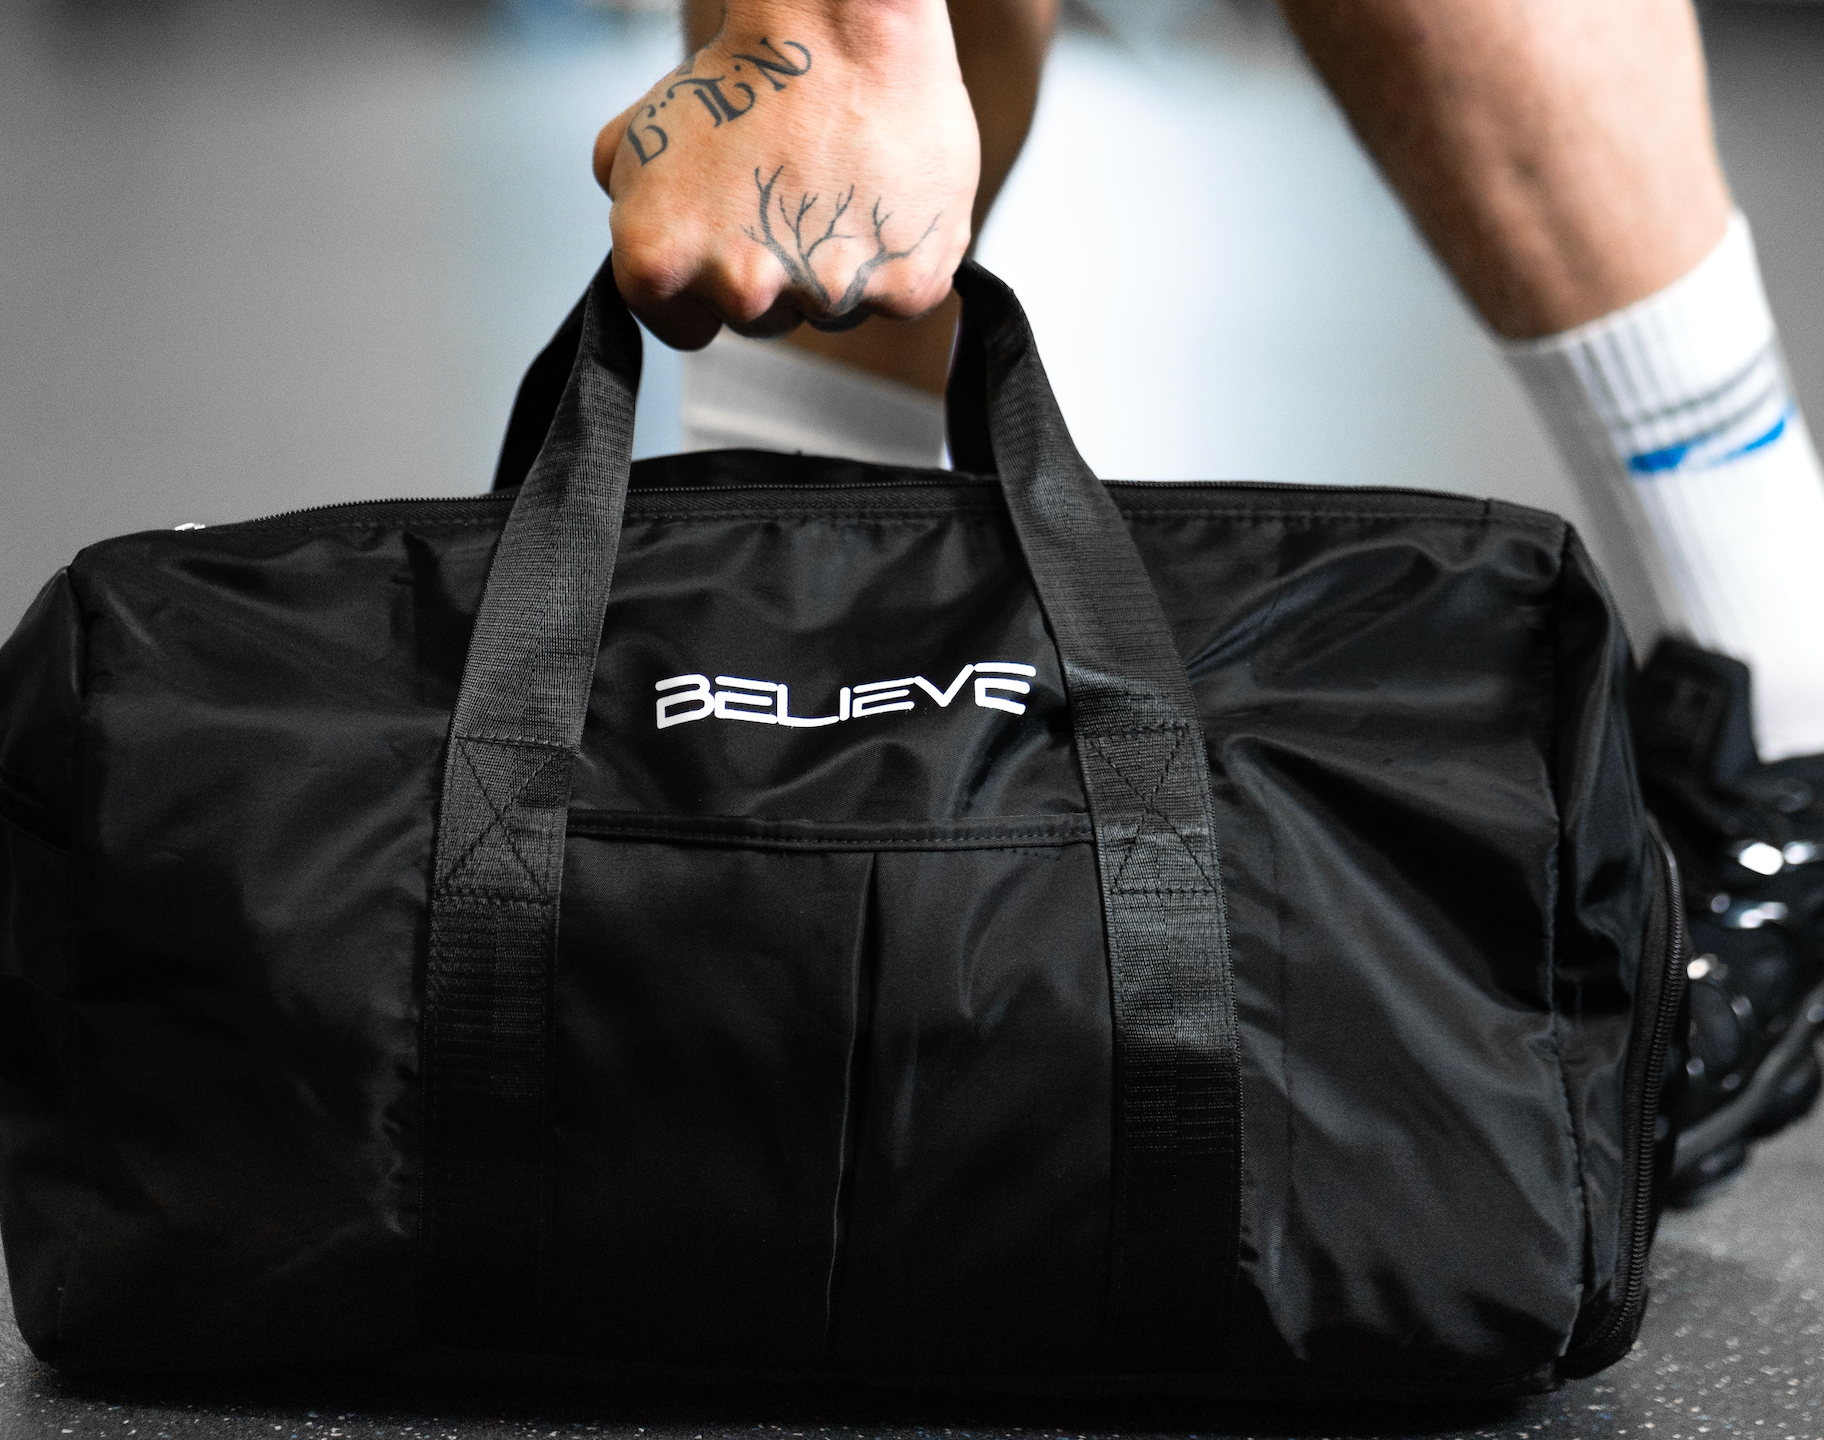 Believe Gym Bag